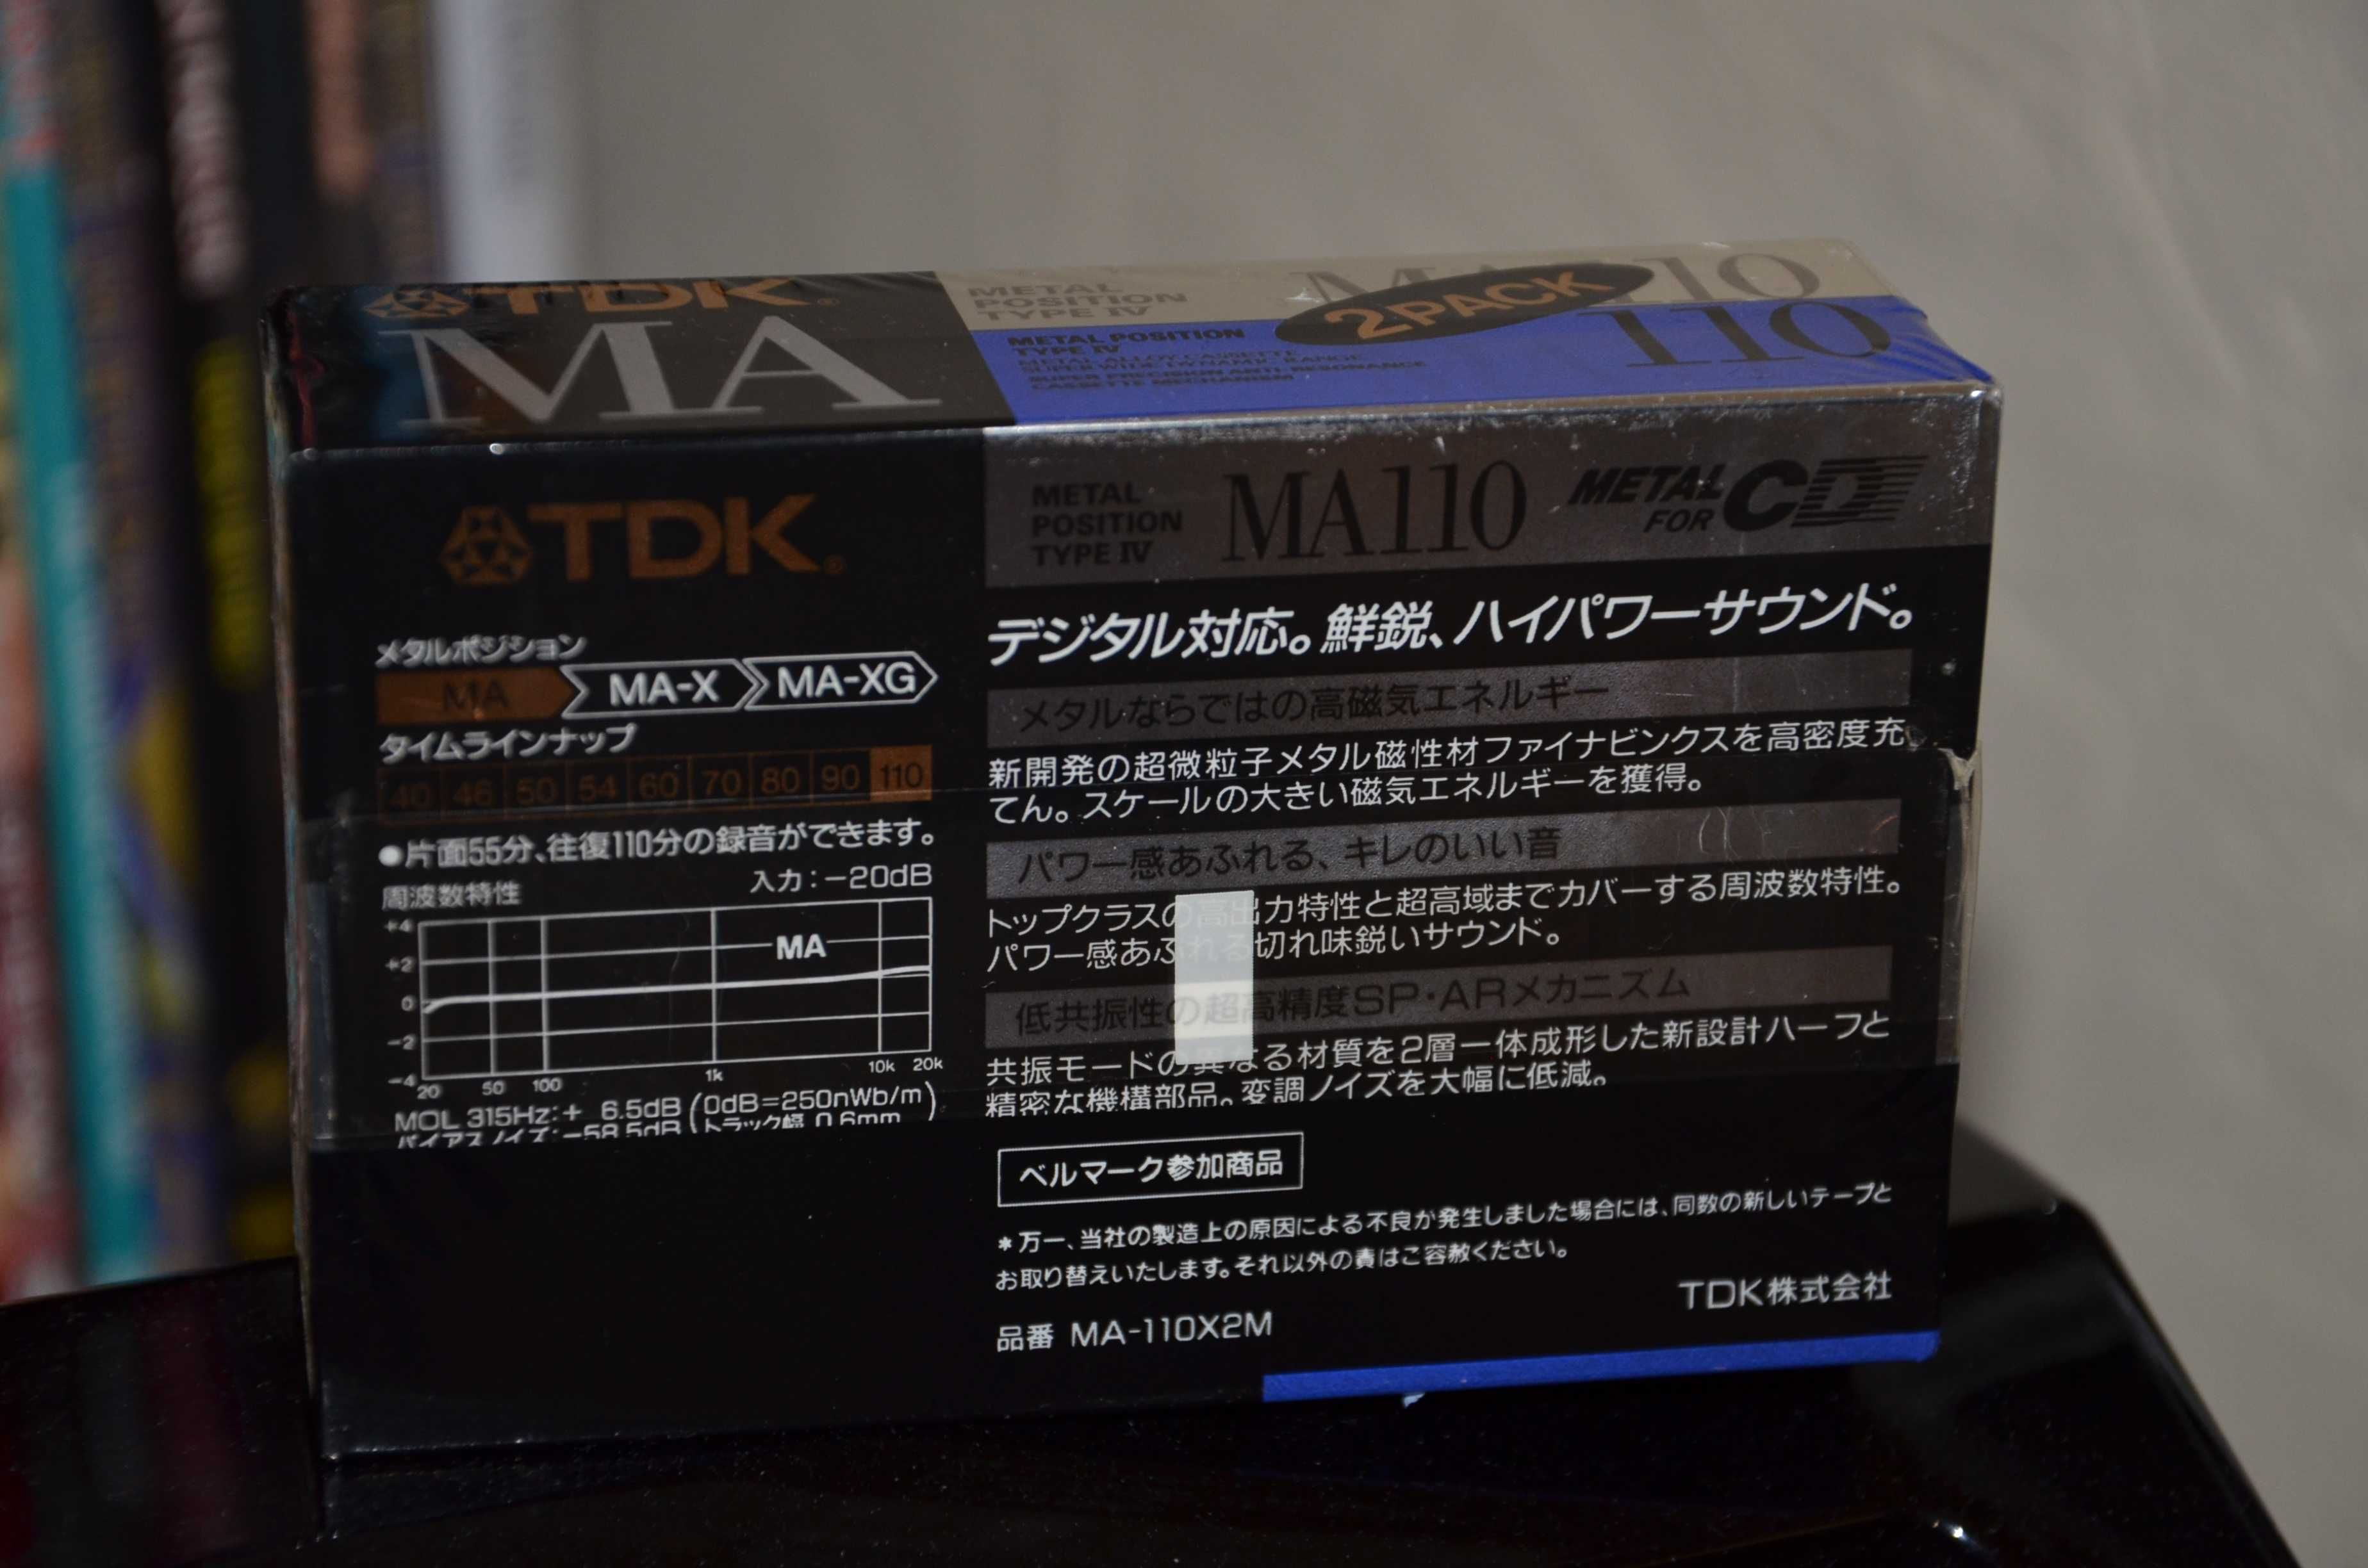 Коллекционная и редкая аудиокассета TDK Metal MA 110 Made in Japan